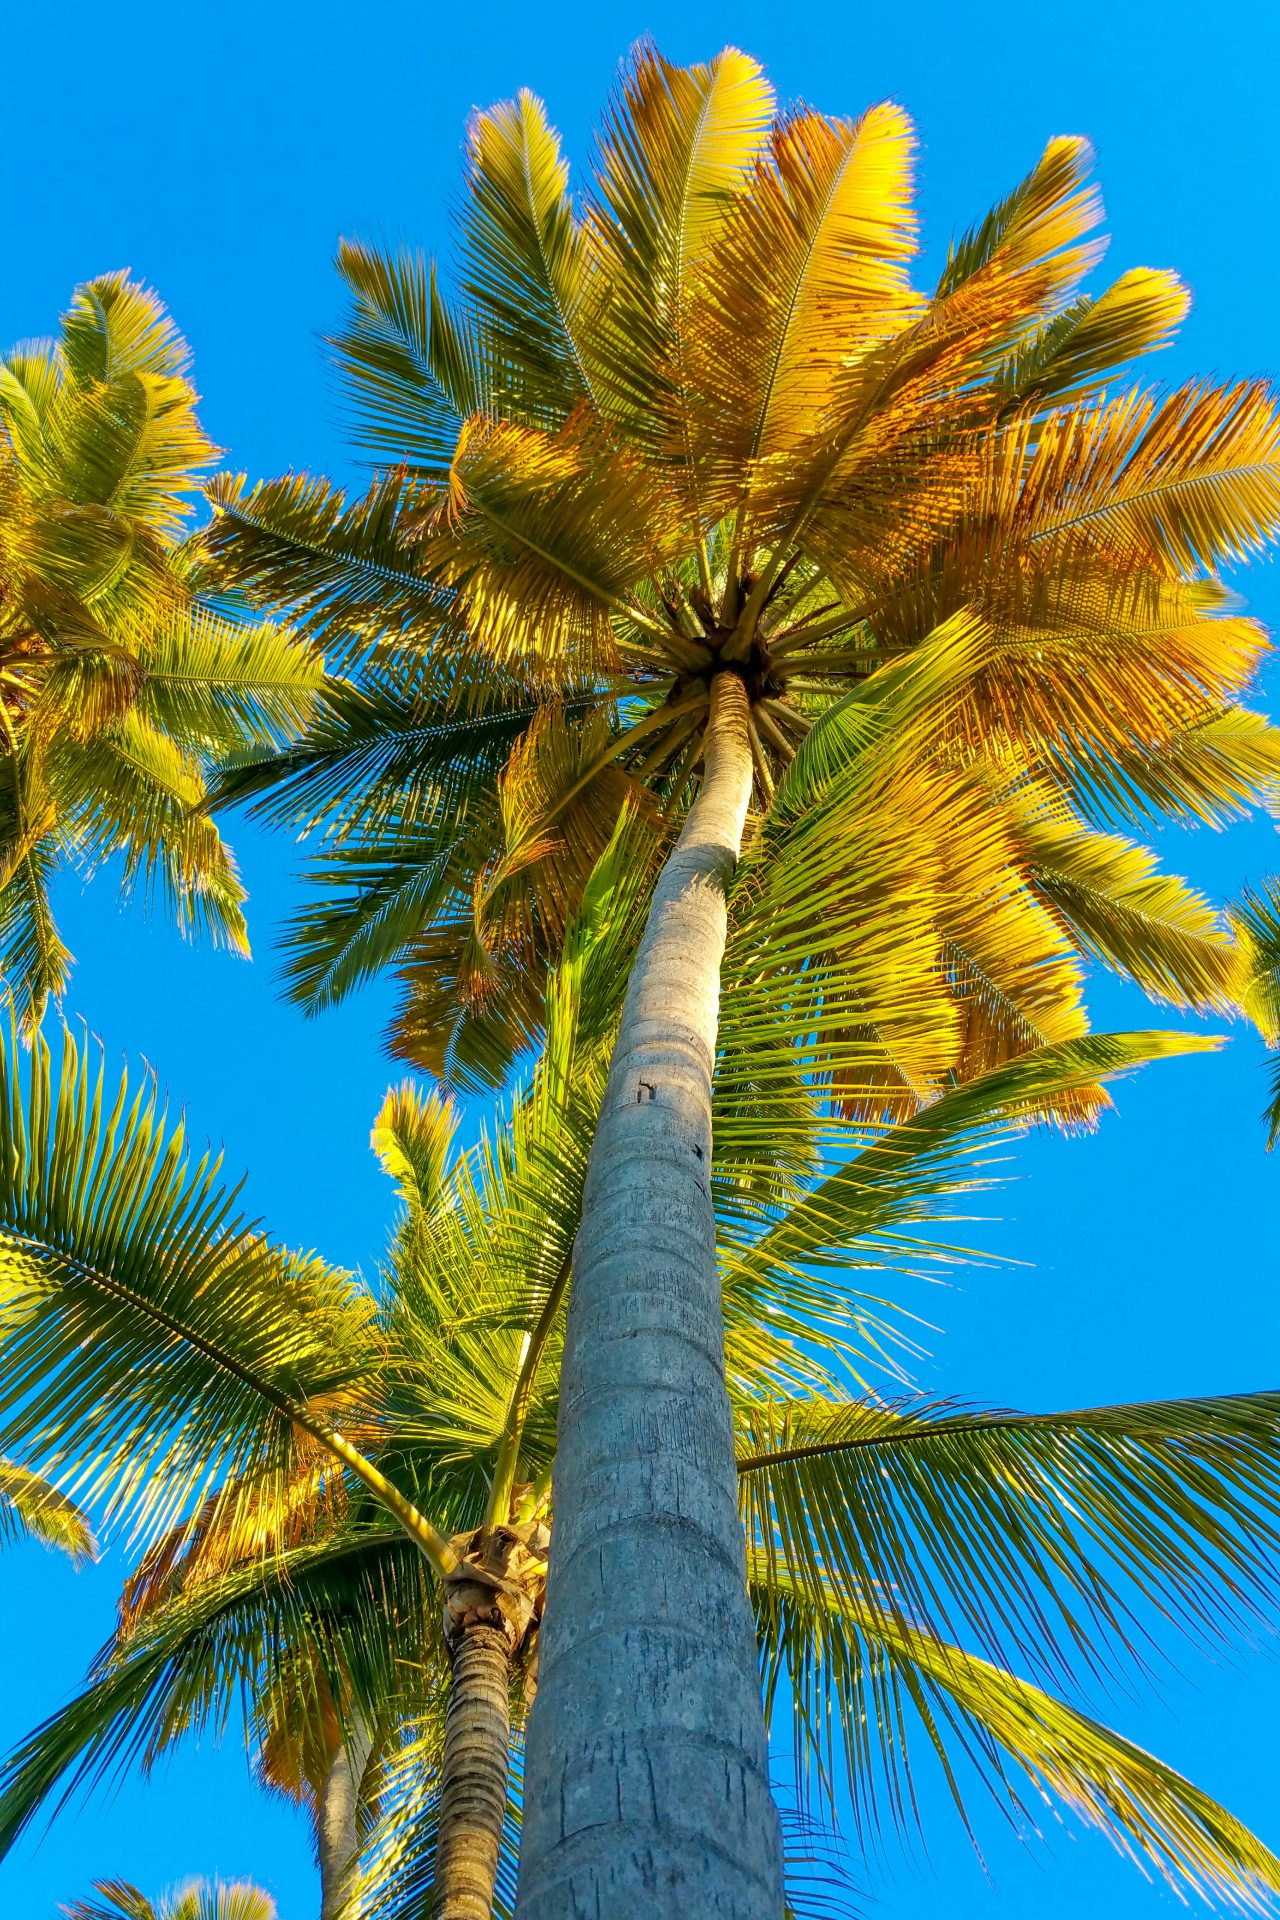 Тропические деревья пальмы